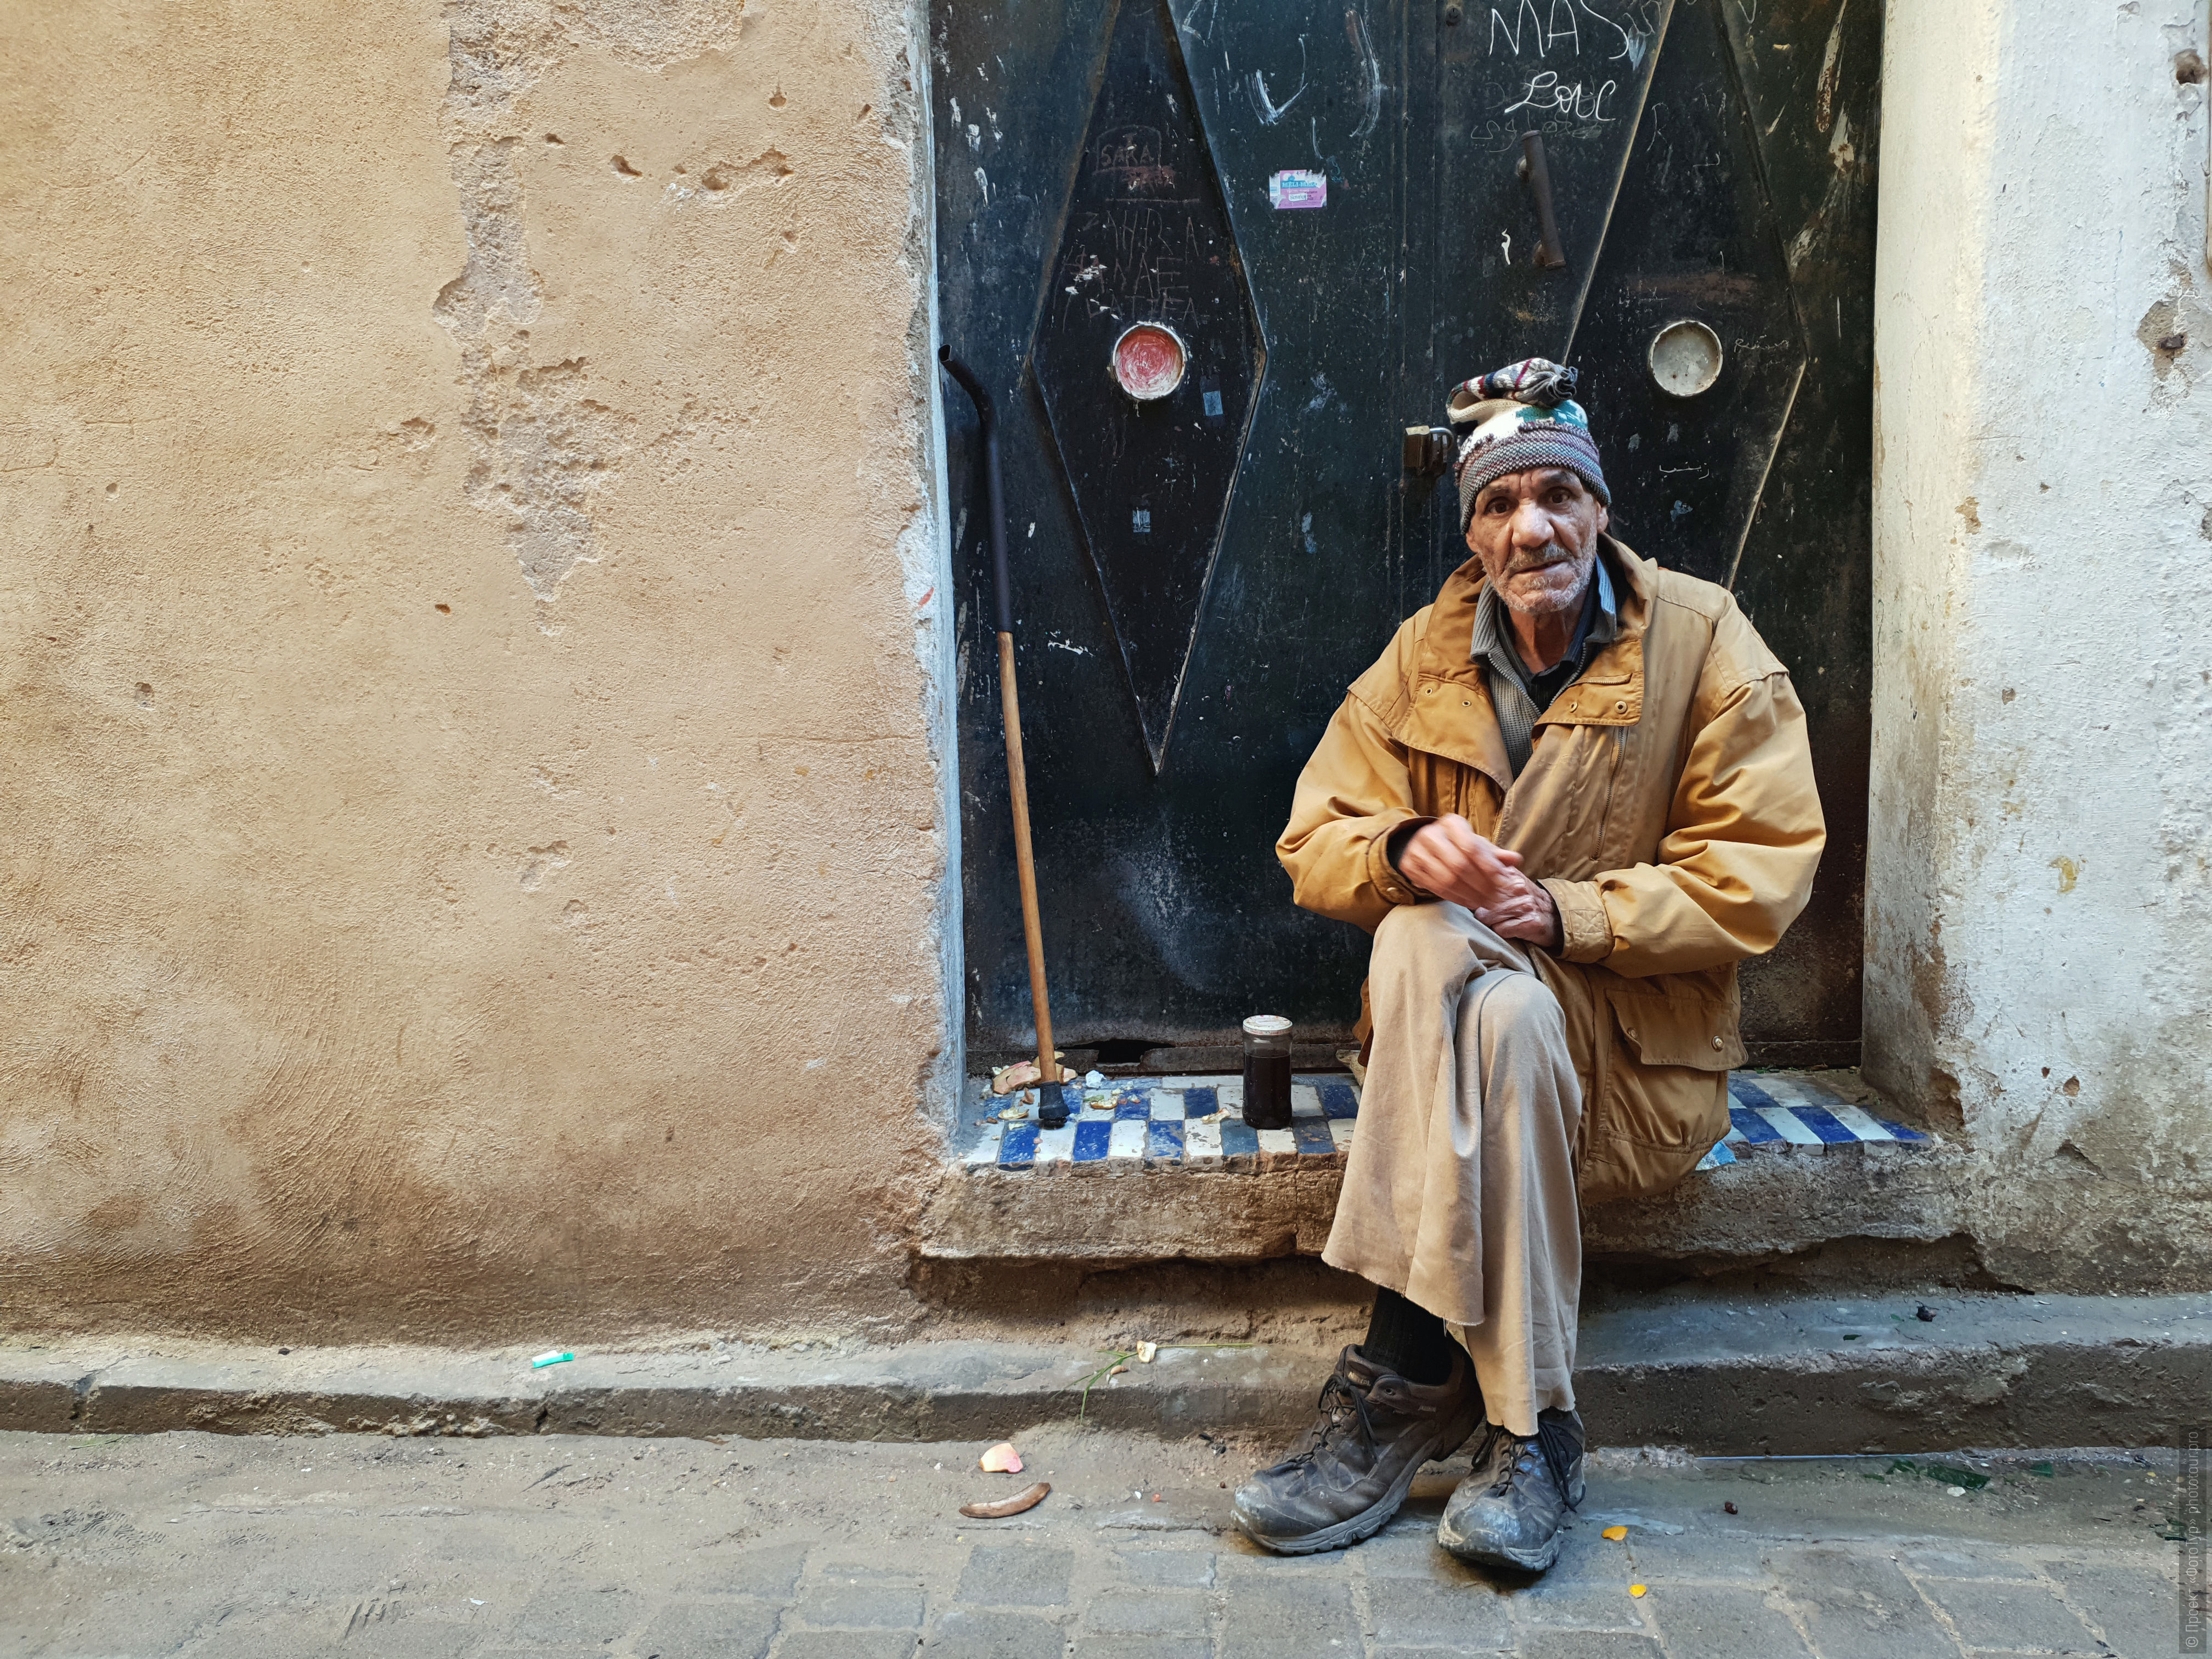 Марроканец в медине Маракеша, фототур по Марокко.